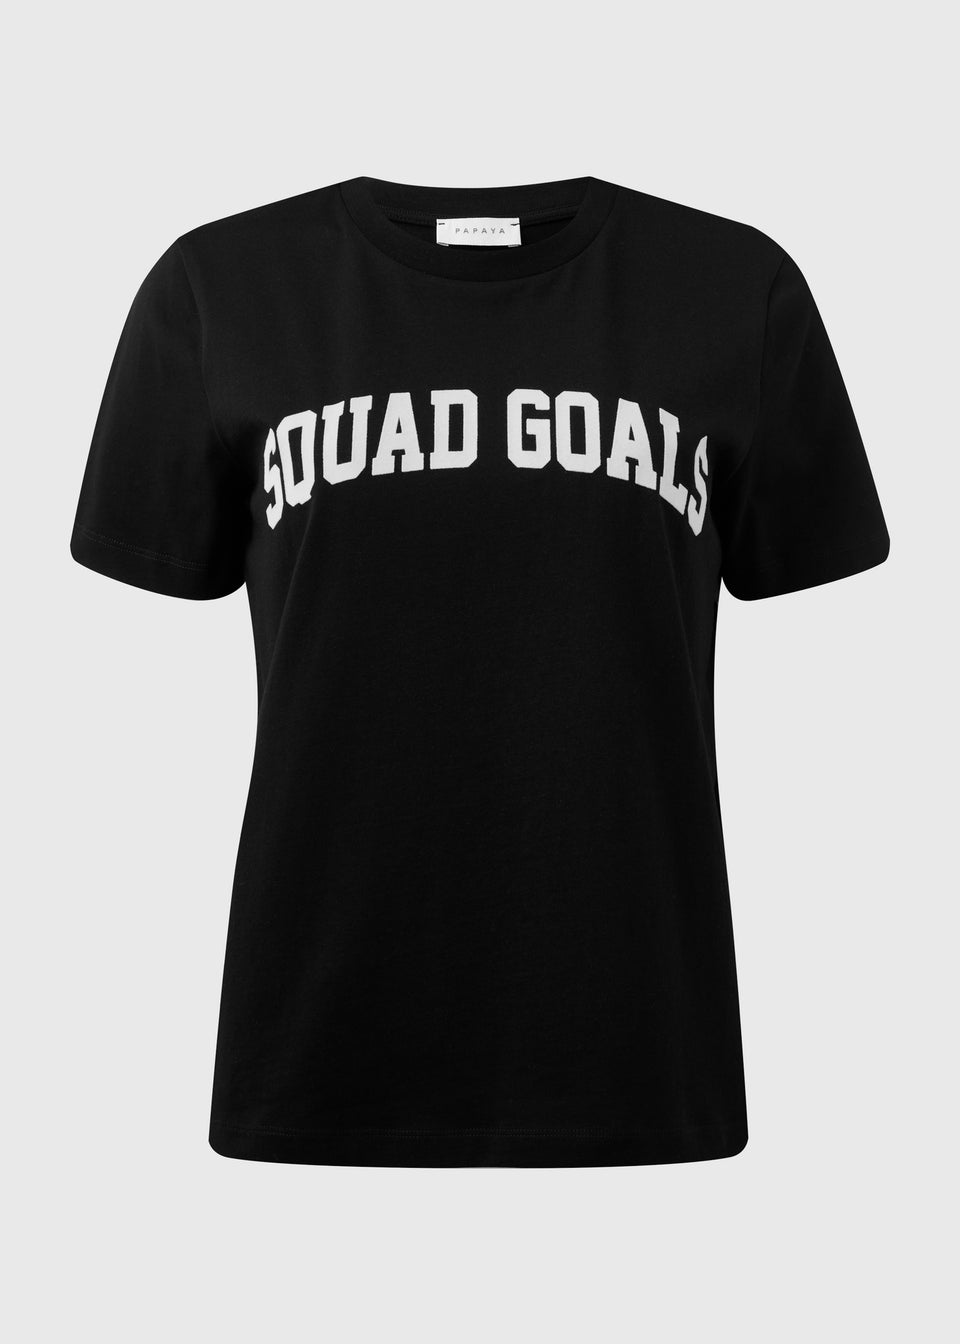 Black Squad Goals T-Shirt